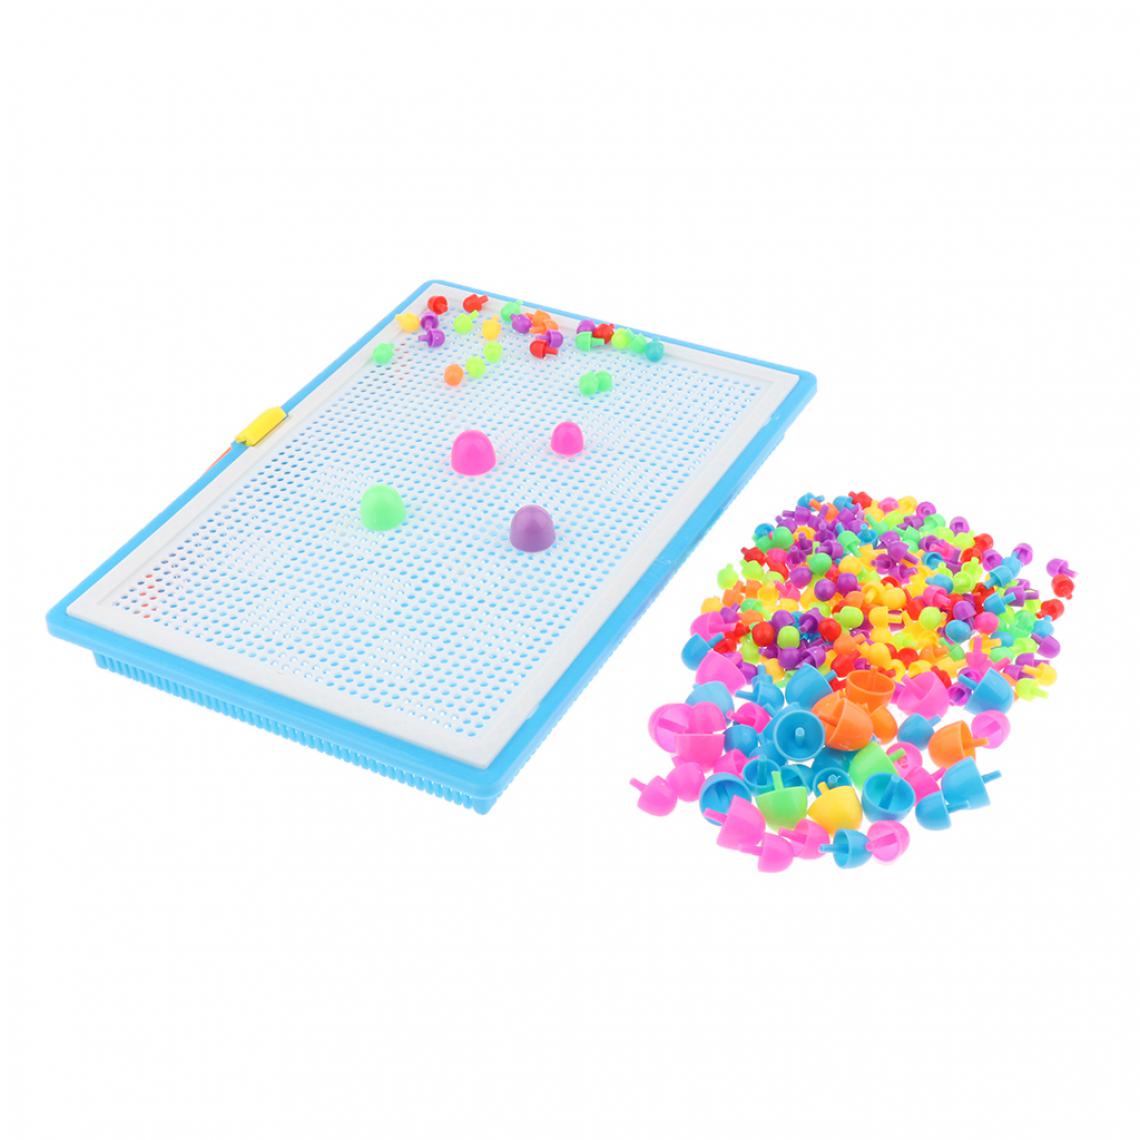 marque generique - Montessori Jeu Champignon Insérer Puzzle Enfants Puzzle Peg Board éducatif - Jeux éducatifs